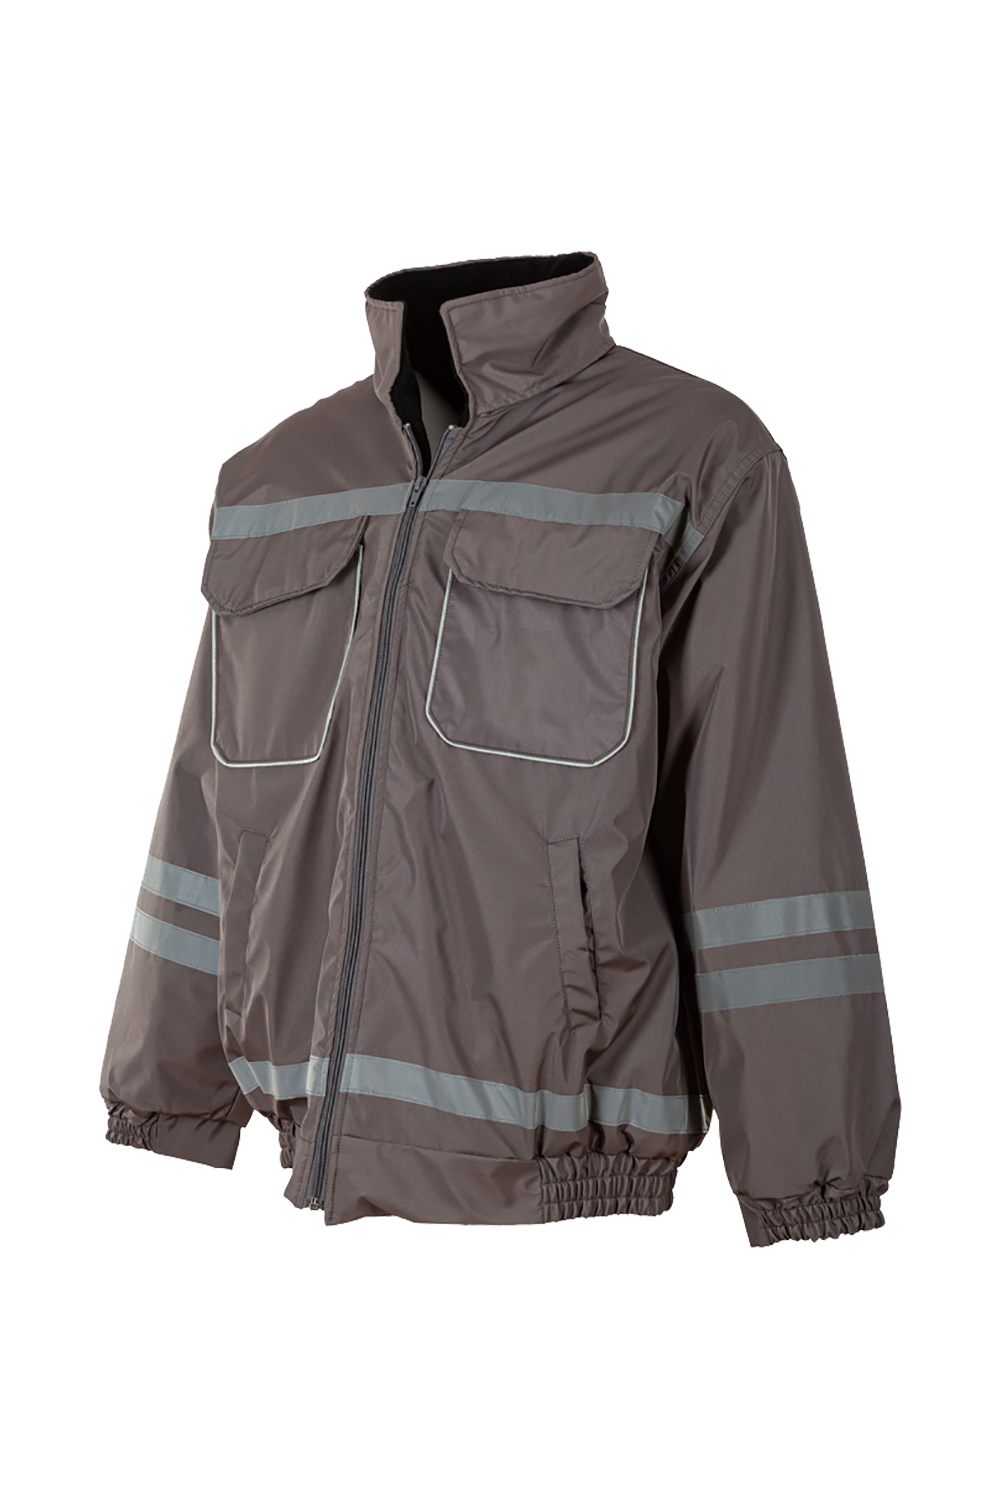 Jacket / Jackets / Workwear